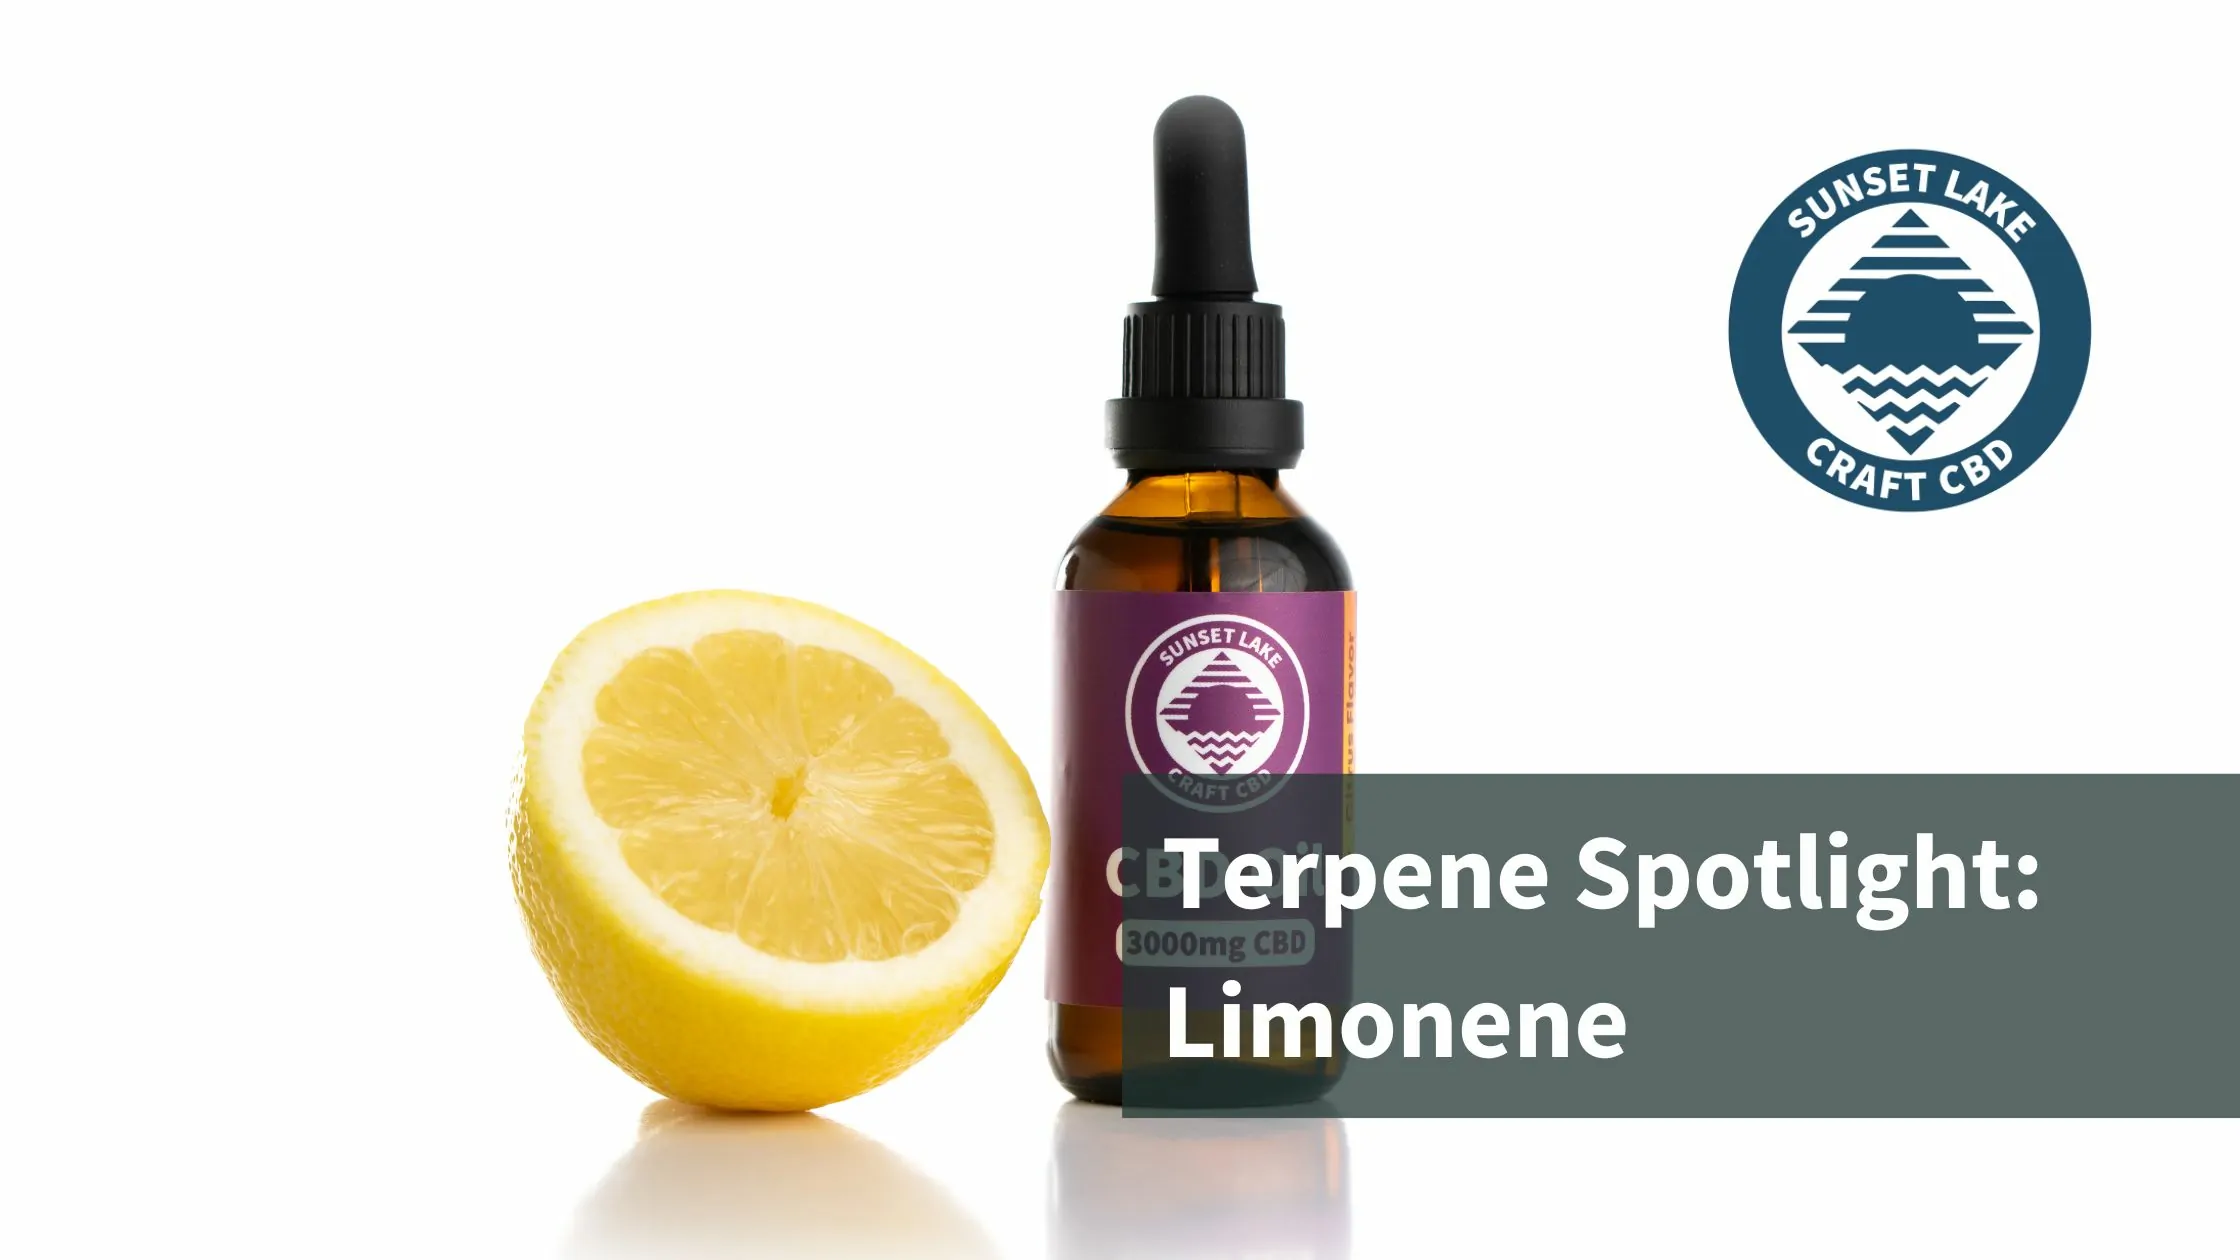 Terpene Spotlight: Limonene